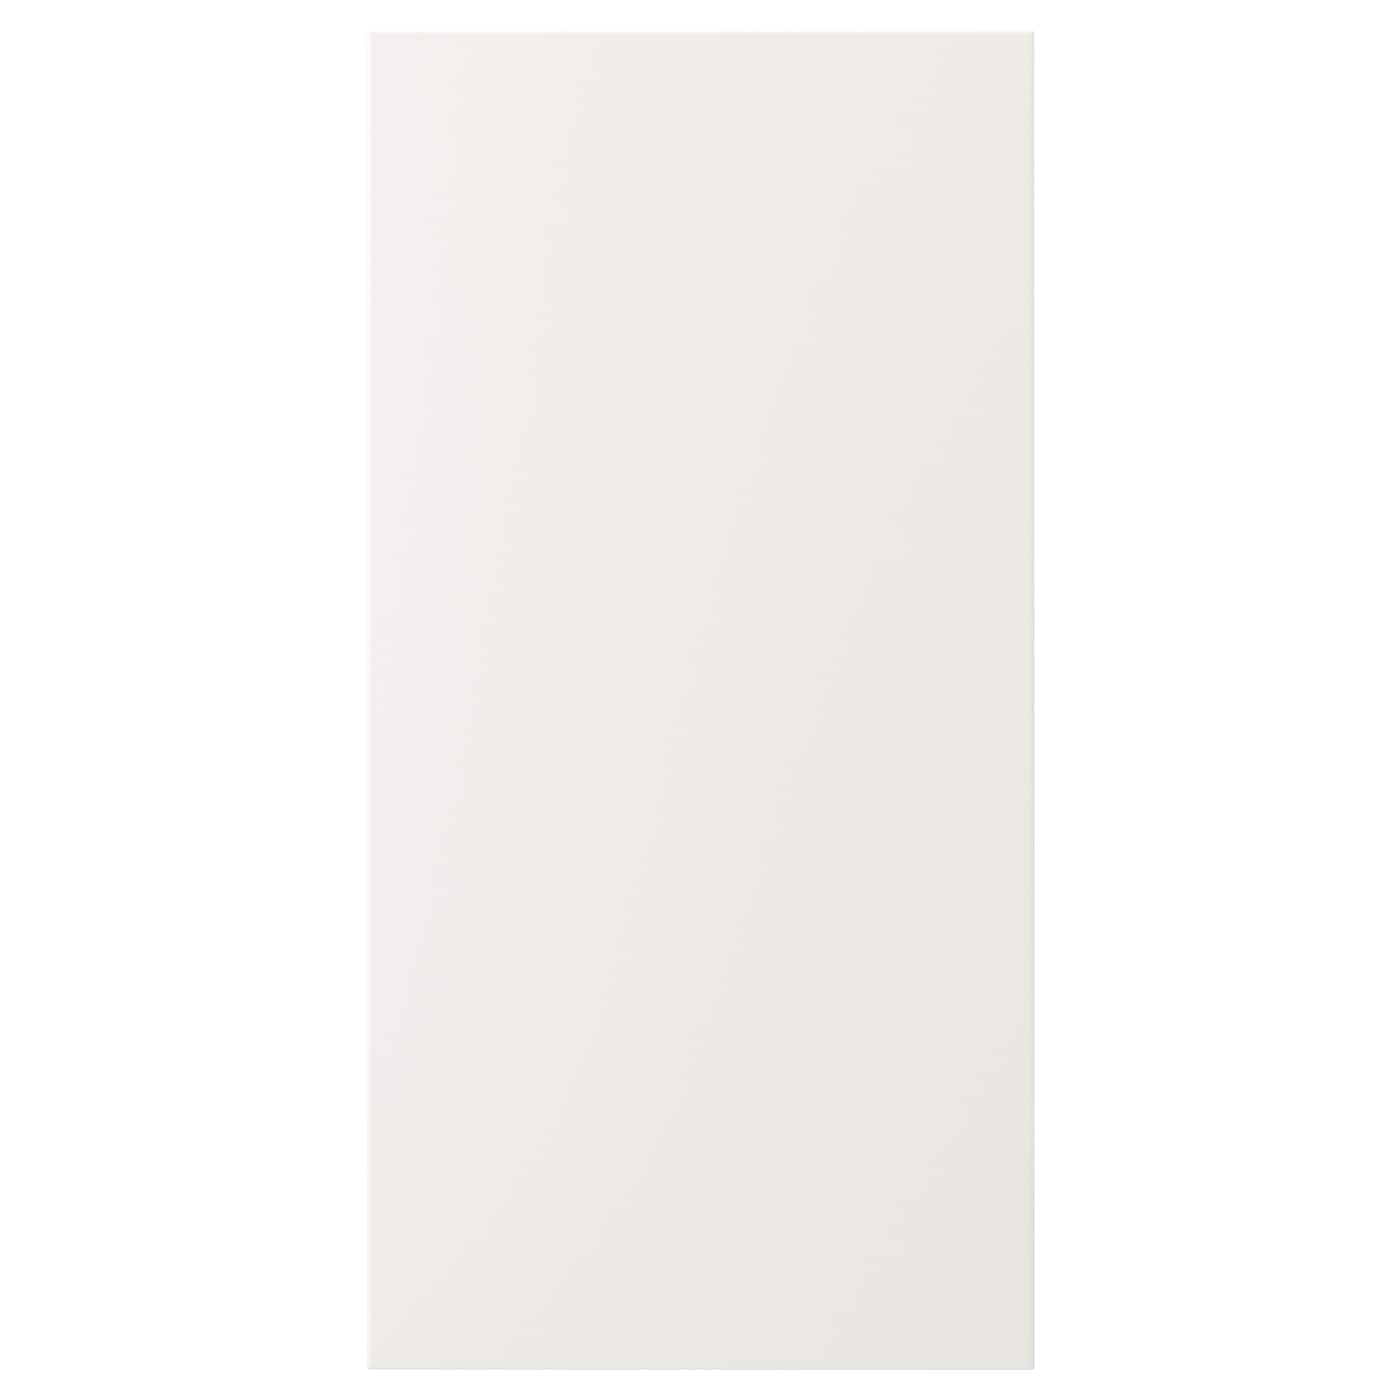 Дверца - IKEA VEDDINGE, 80х40 см, белый, ВЕДИНГЕ ИКЕА